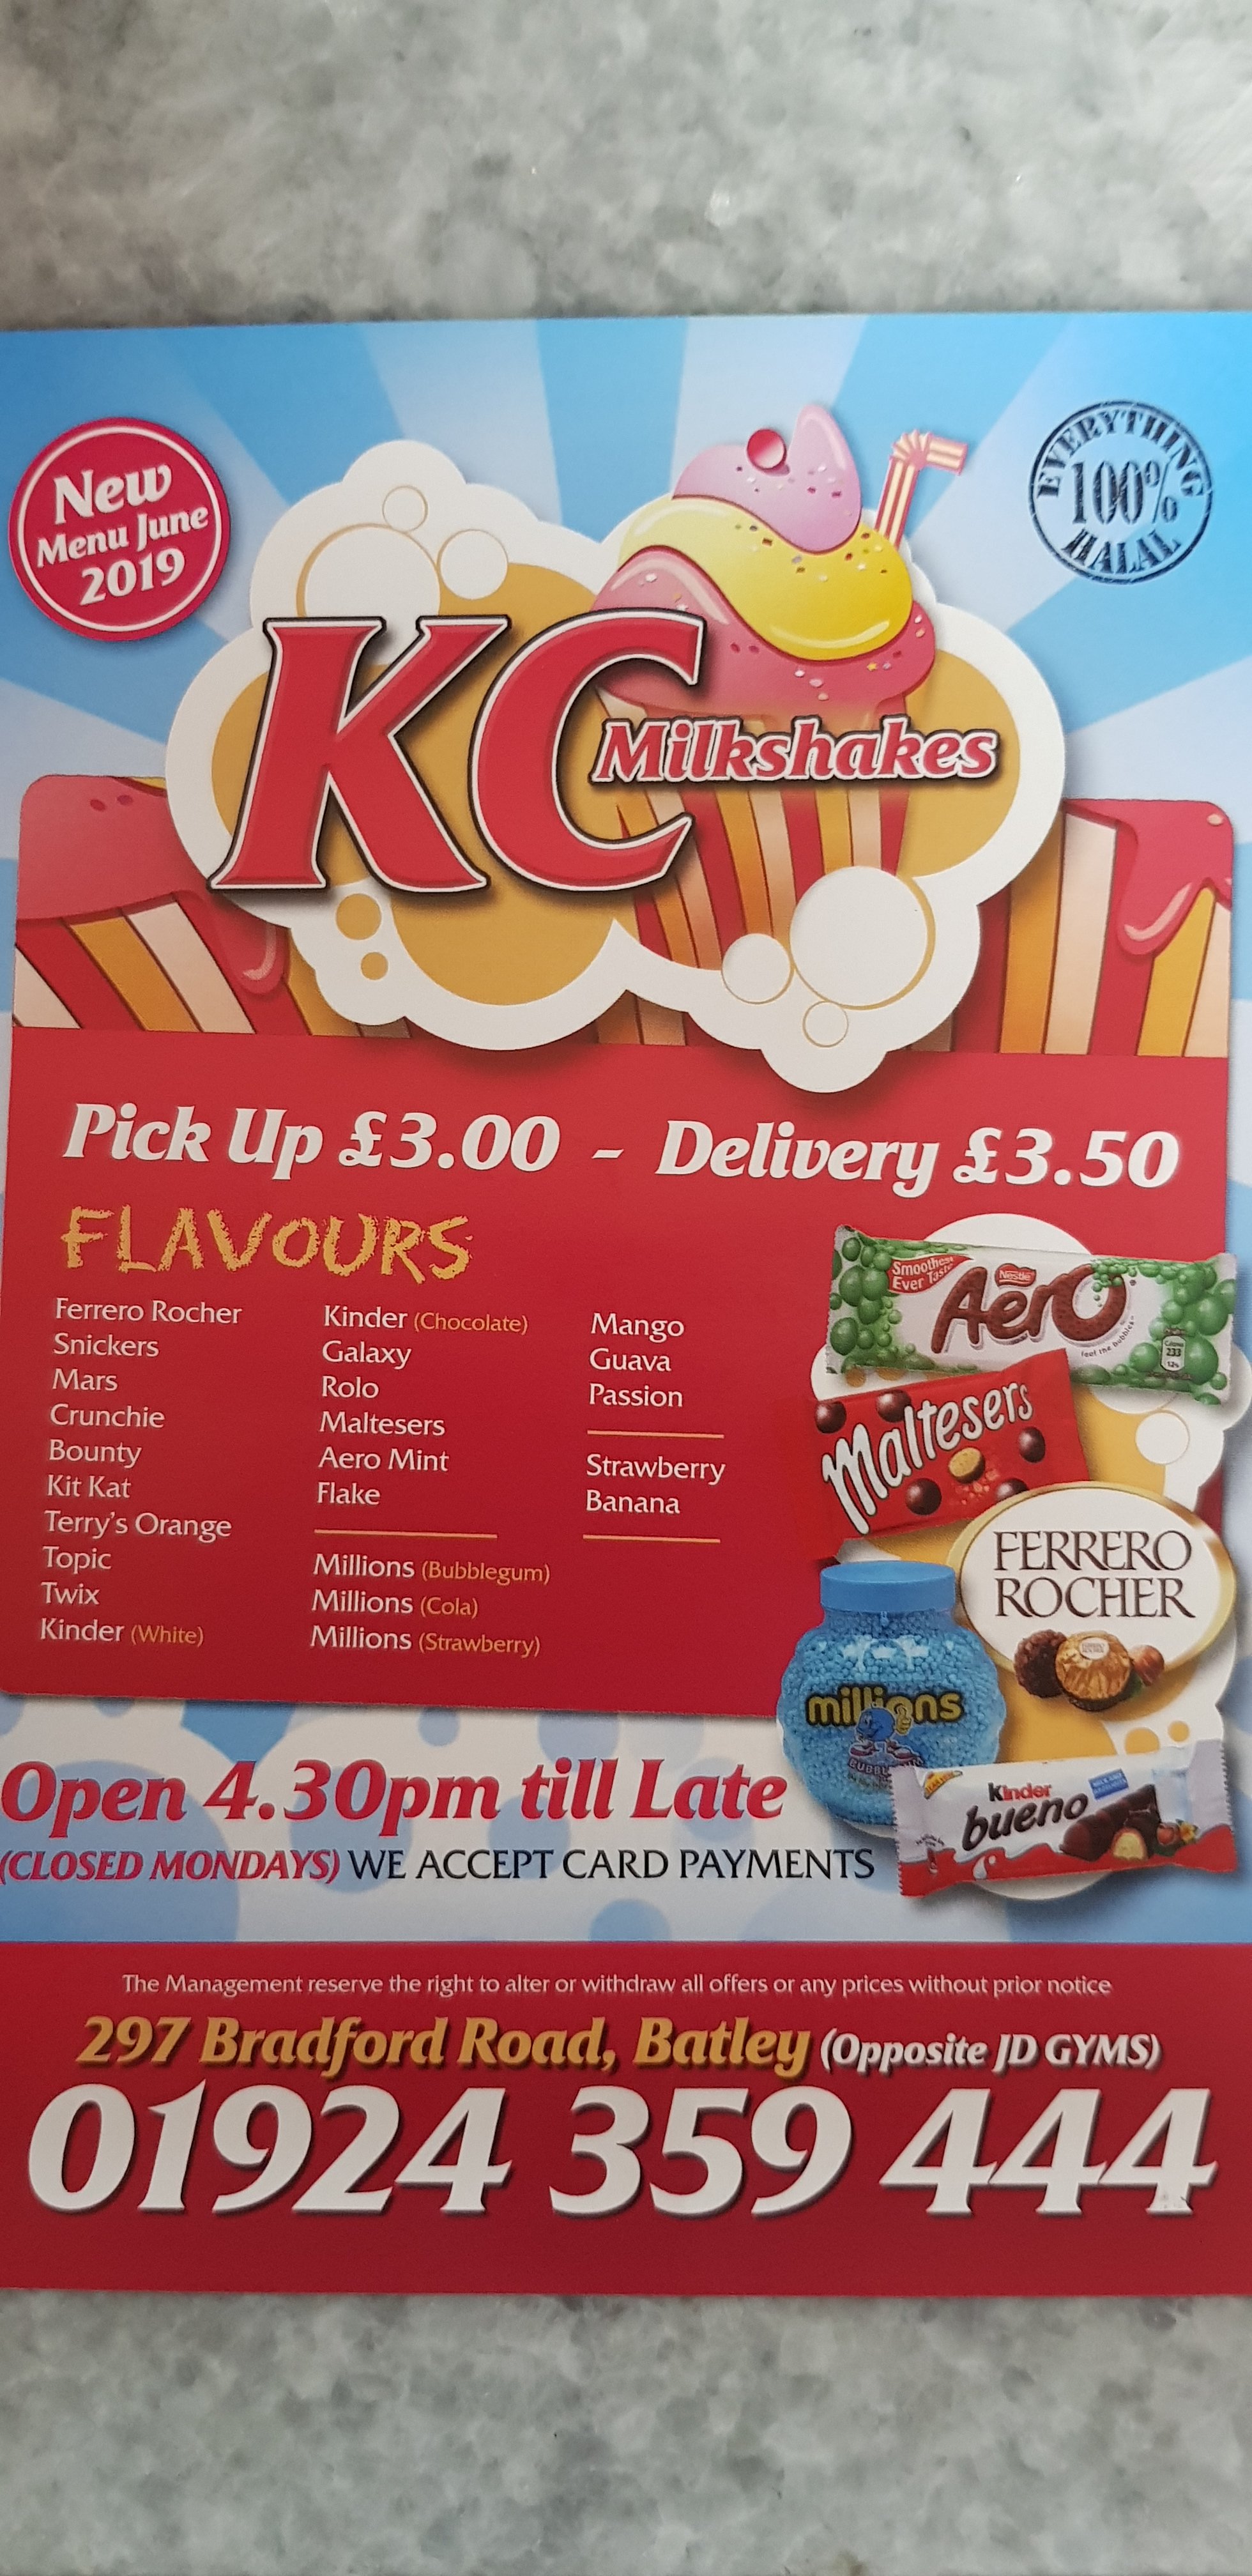 KC Fast Food & Milkshakes